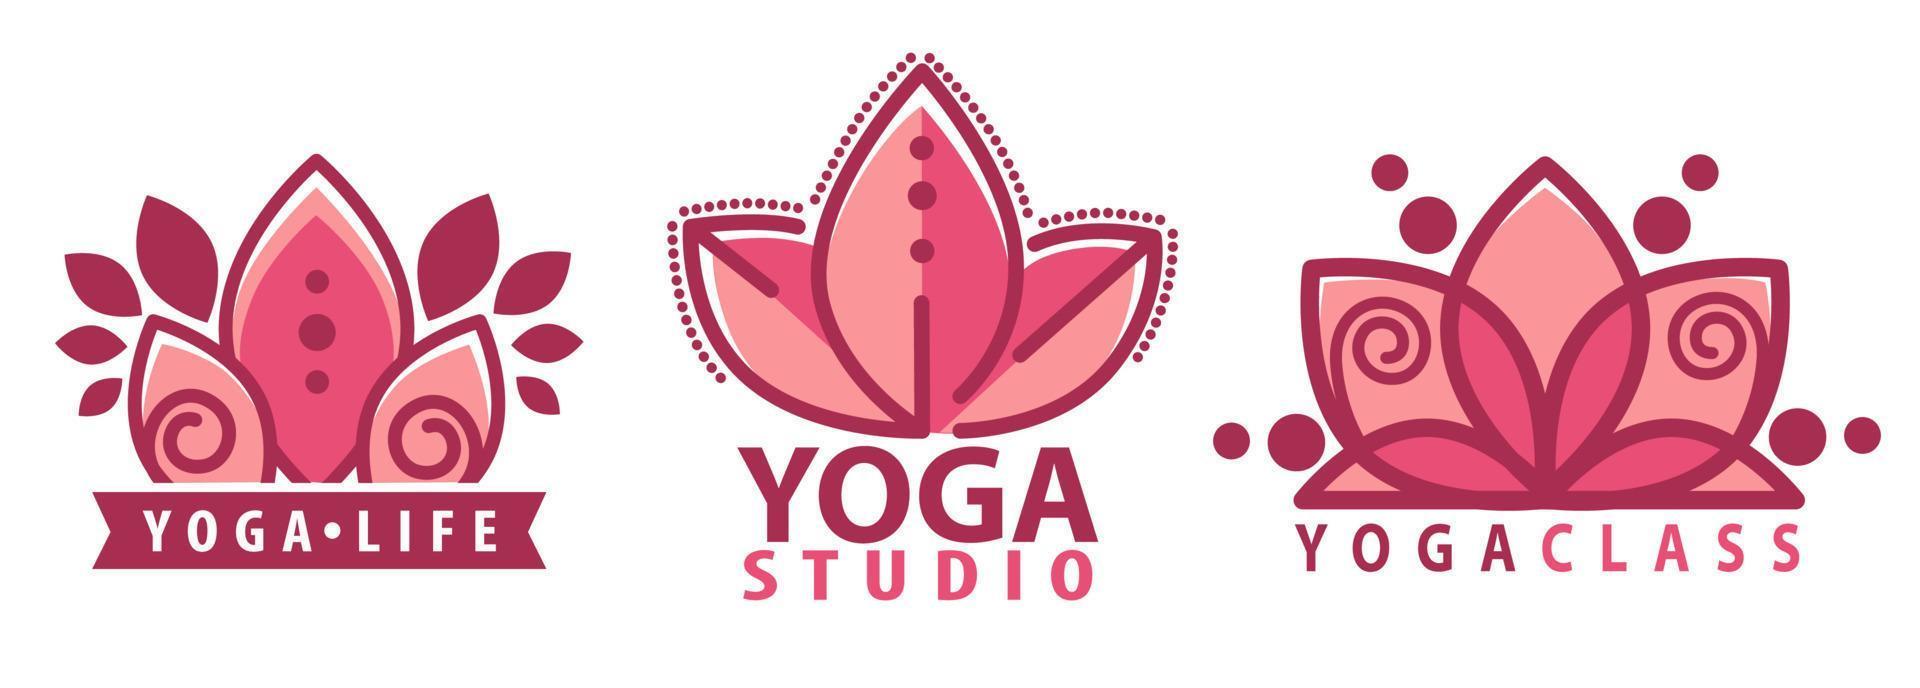 estudio de yoga, logotipo de inscripción de flor de loto vector